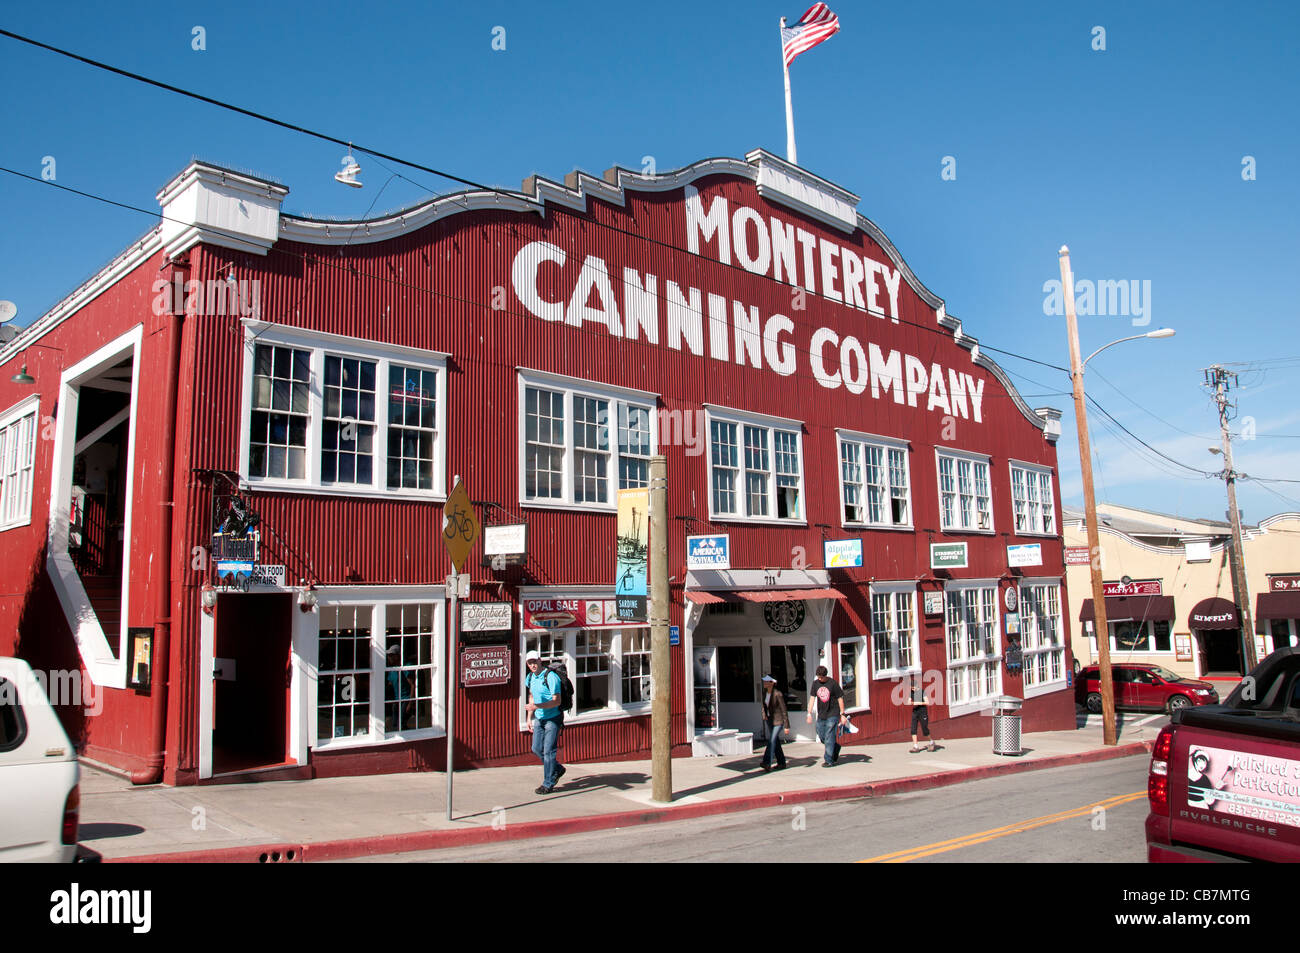 Monterey Canning Company Kalifornien Port Hafen USA amerikanische Vereinigte Staaten von Amerika Stockfoto